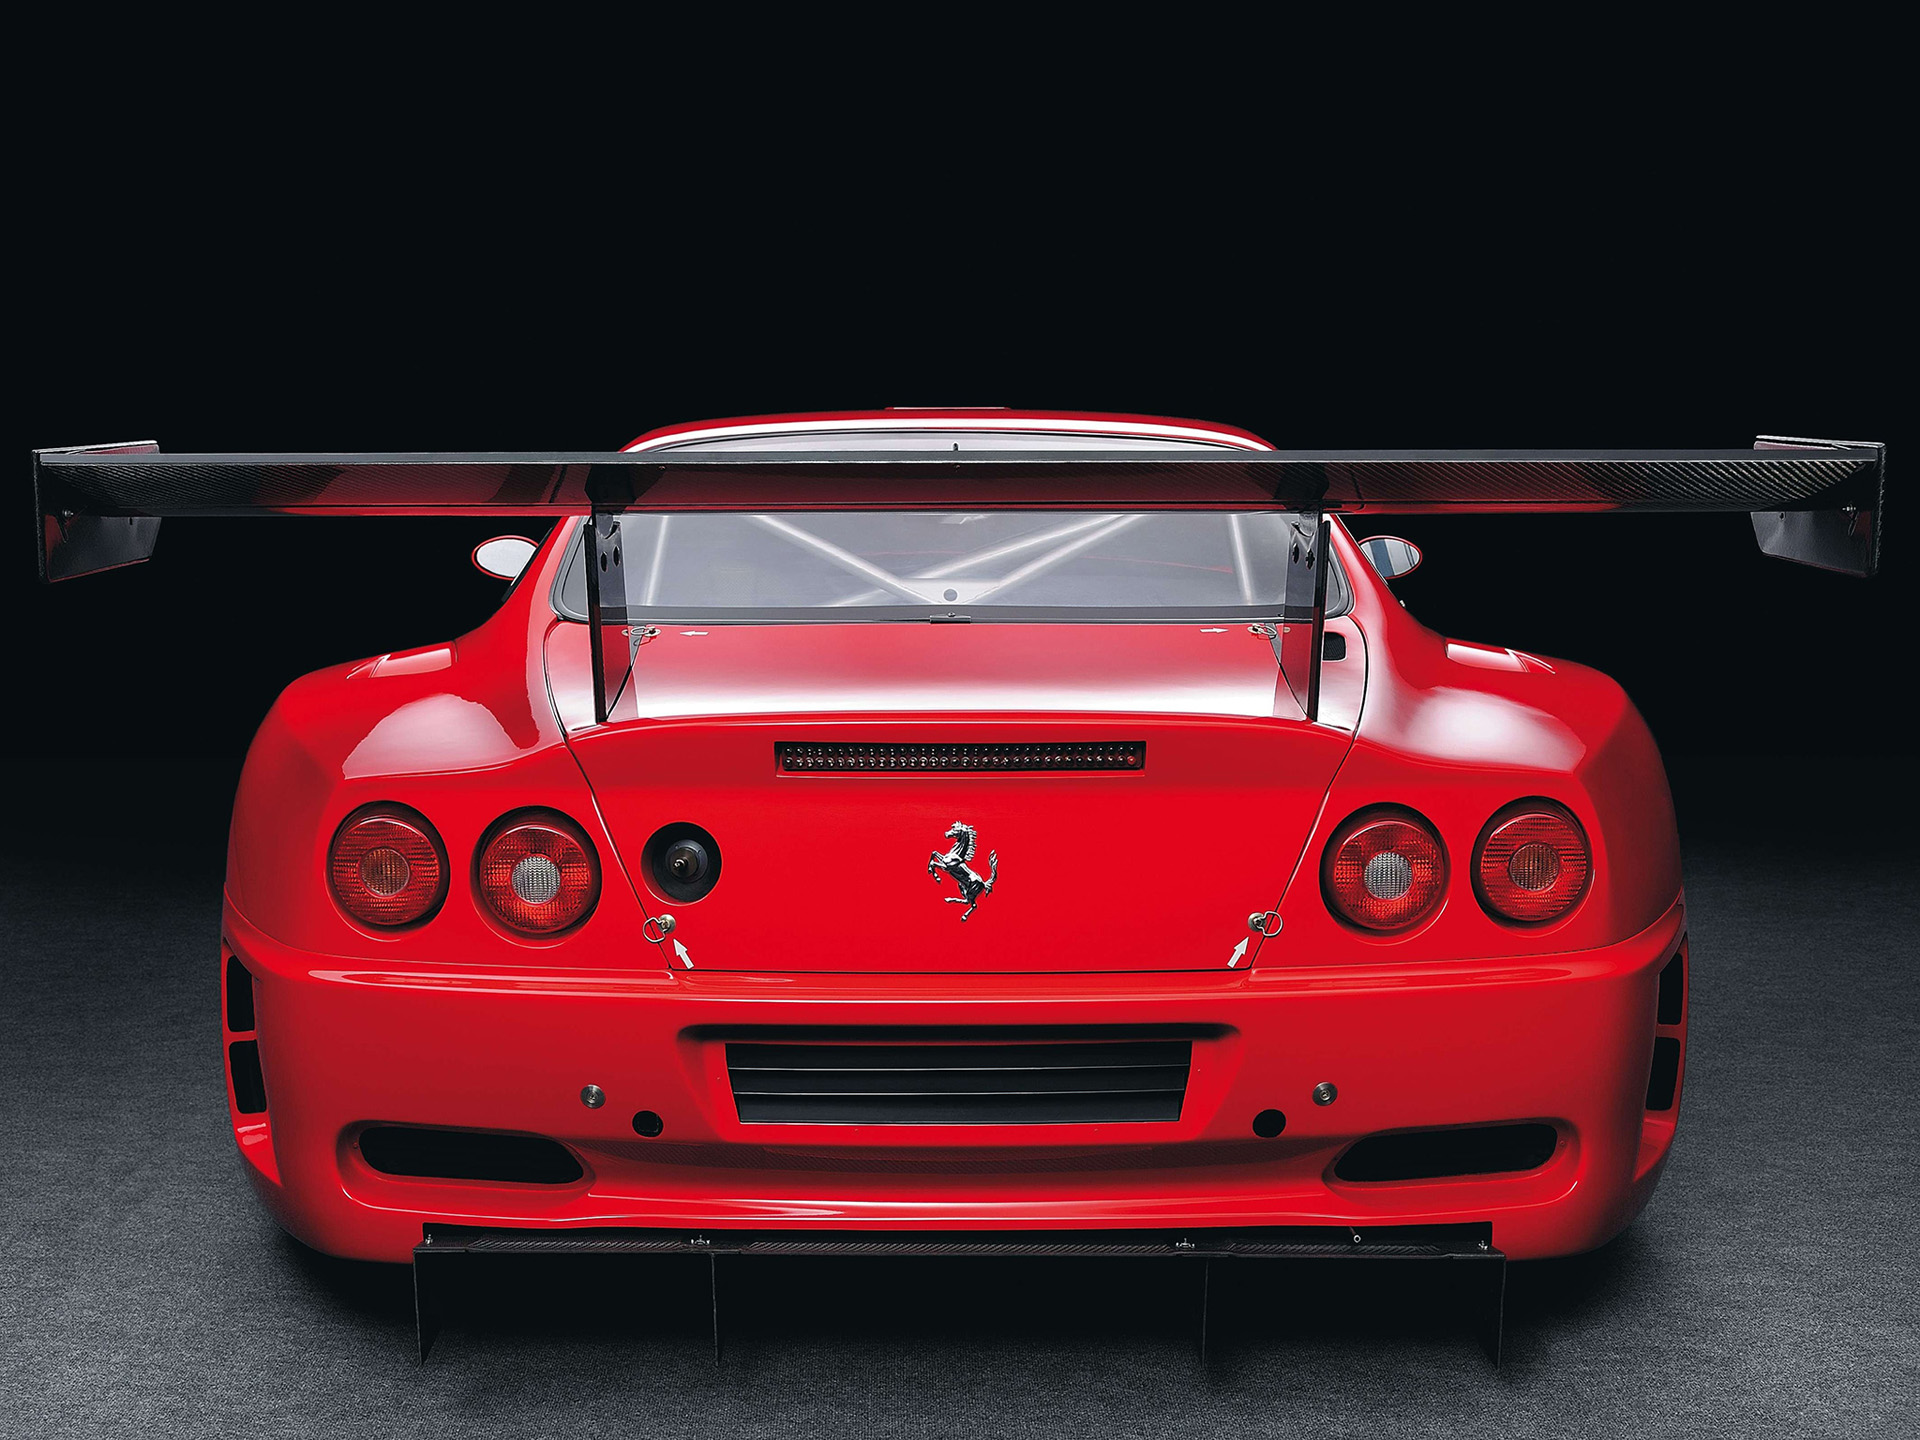  2004 Ferrari 575 GTC Wallpaper.